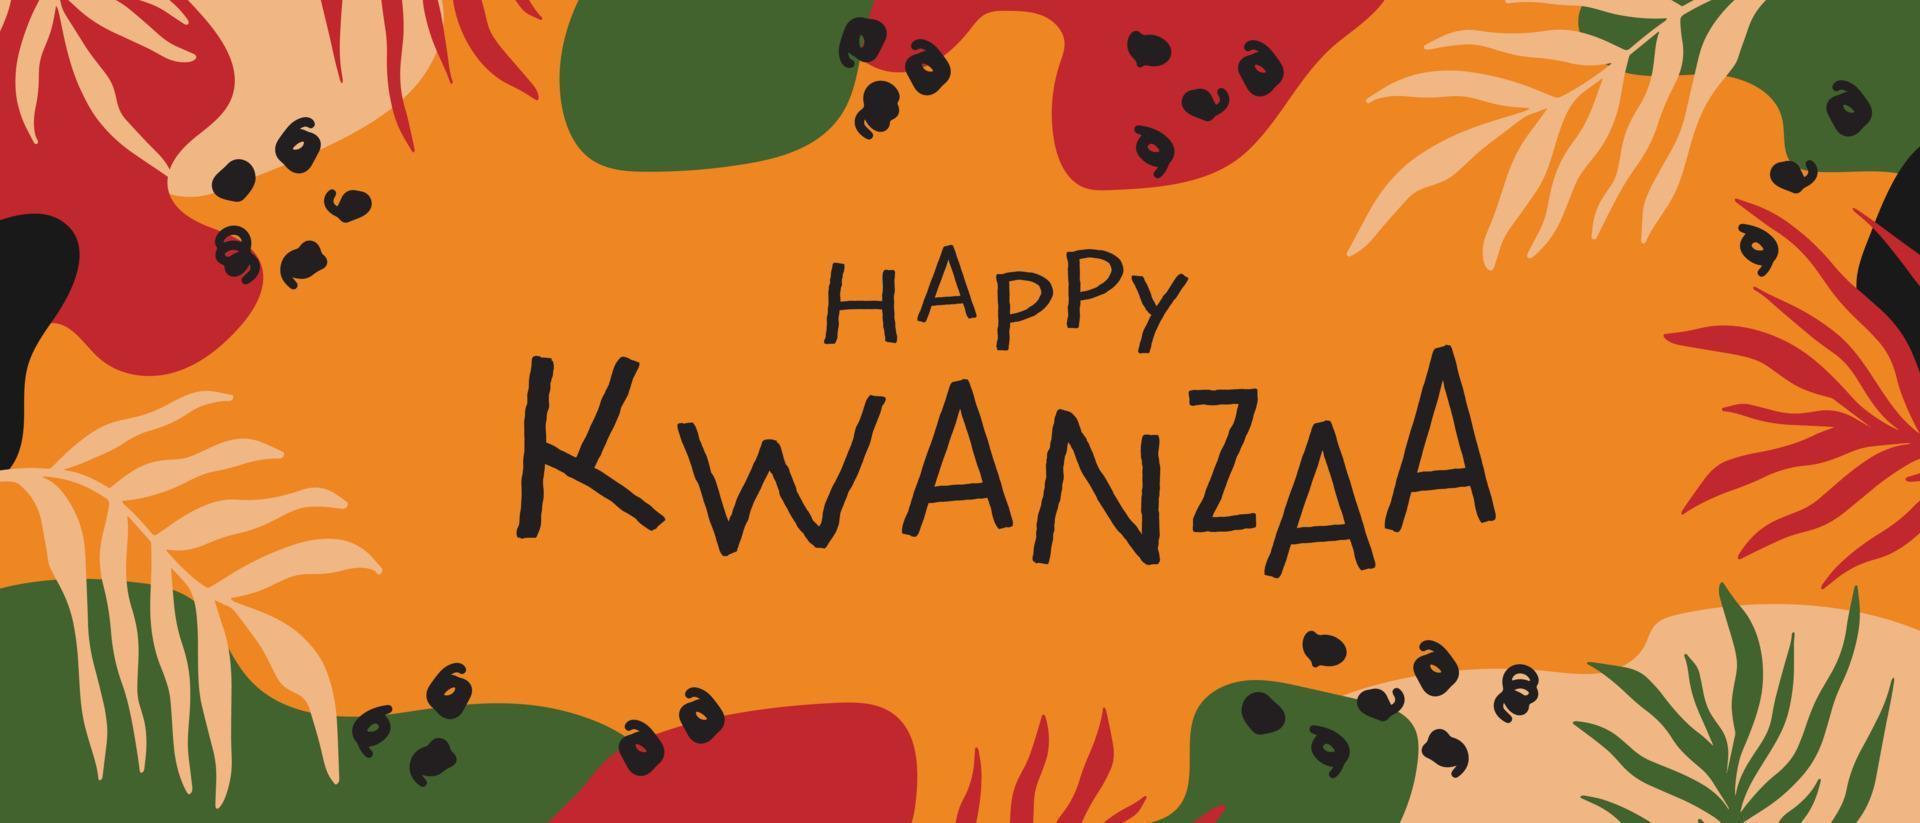 gelukkig kwanzaa abstract helder kleurrijk horizontaal lang banier ontwerp met willekeurig biologisch vormen, palm bladeren. vector sjabloon voor kwanzaa Afrikaanse Amerikaans viering in usa.act,